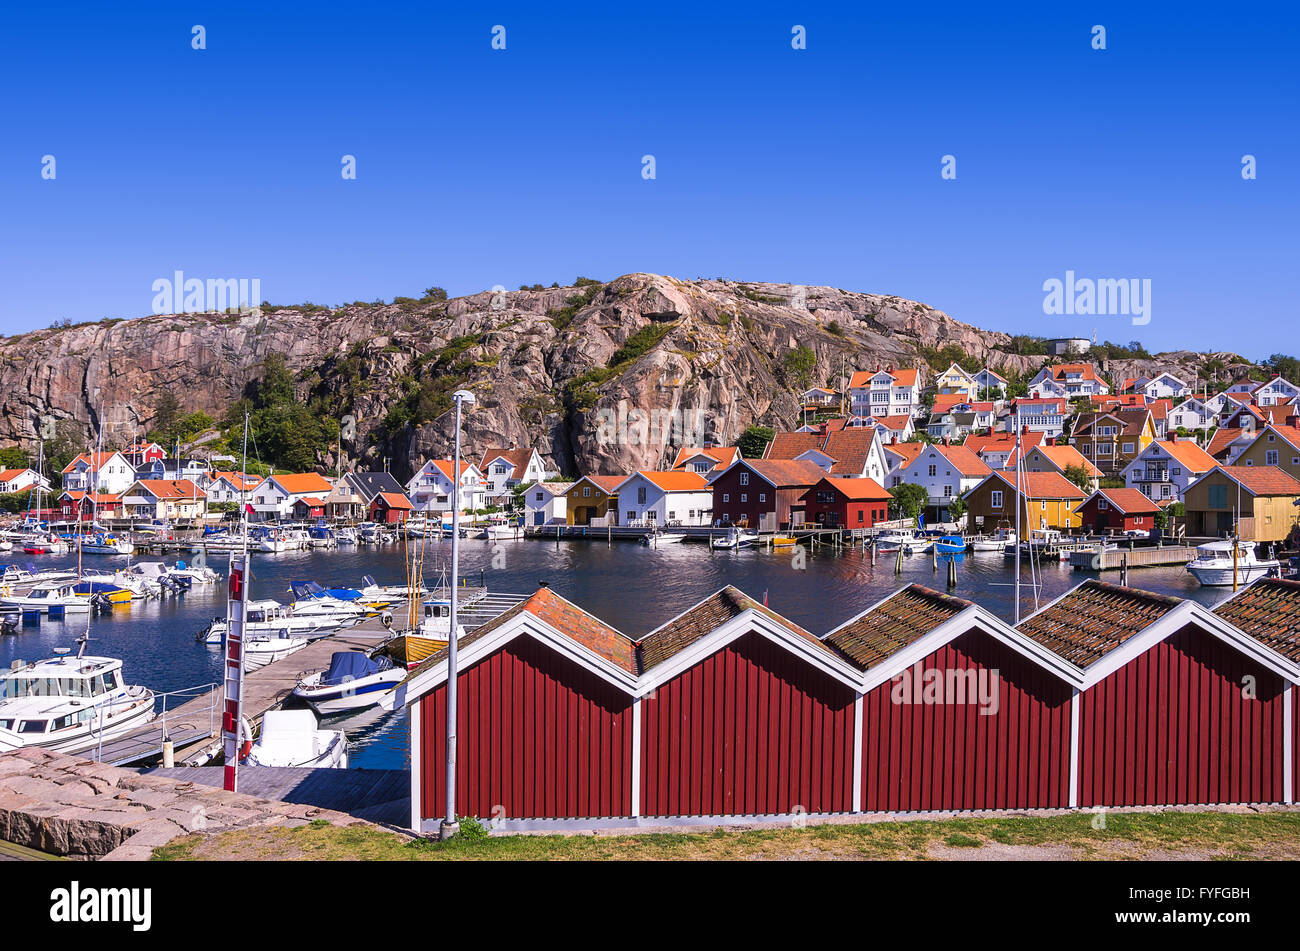 Angeln-Dorf von Fjallbacka in der Bohuslan Grafschaft, Schweden. Stockfoto